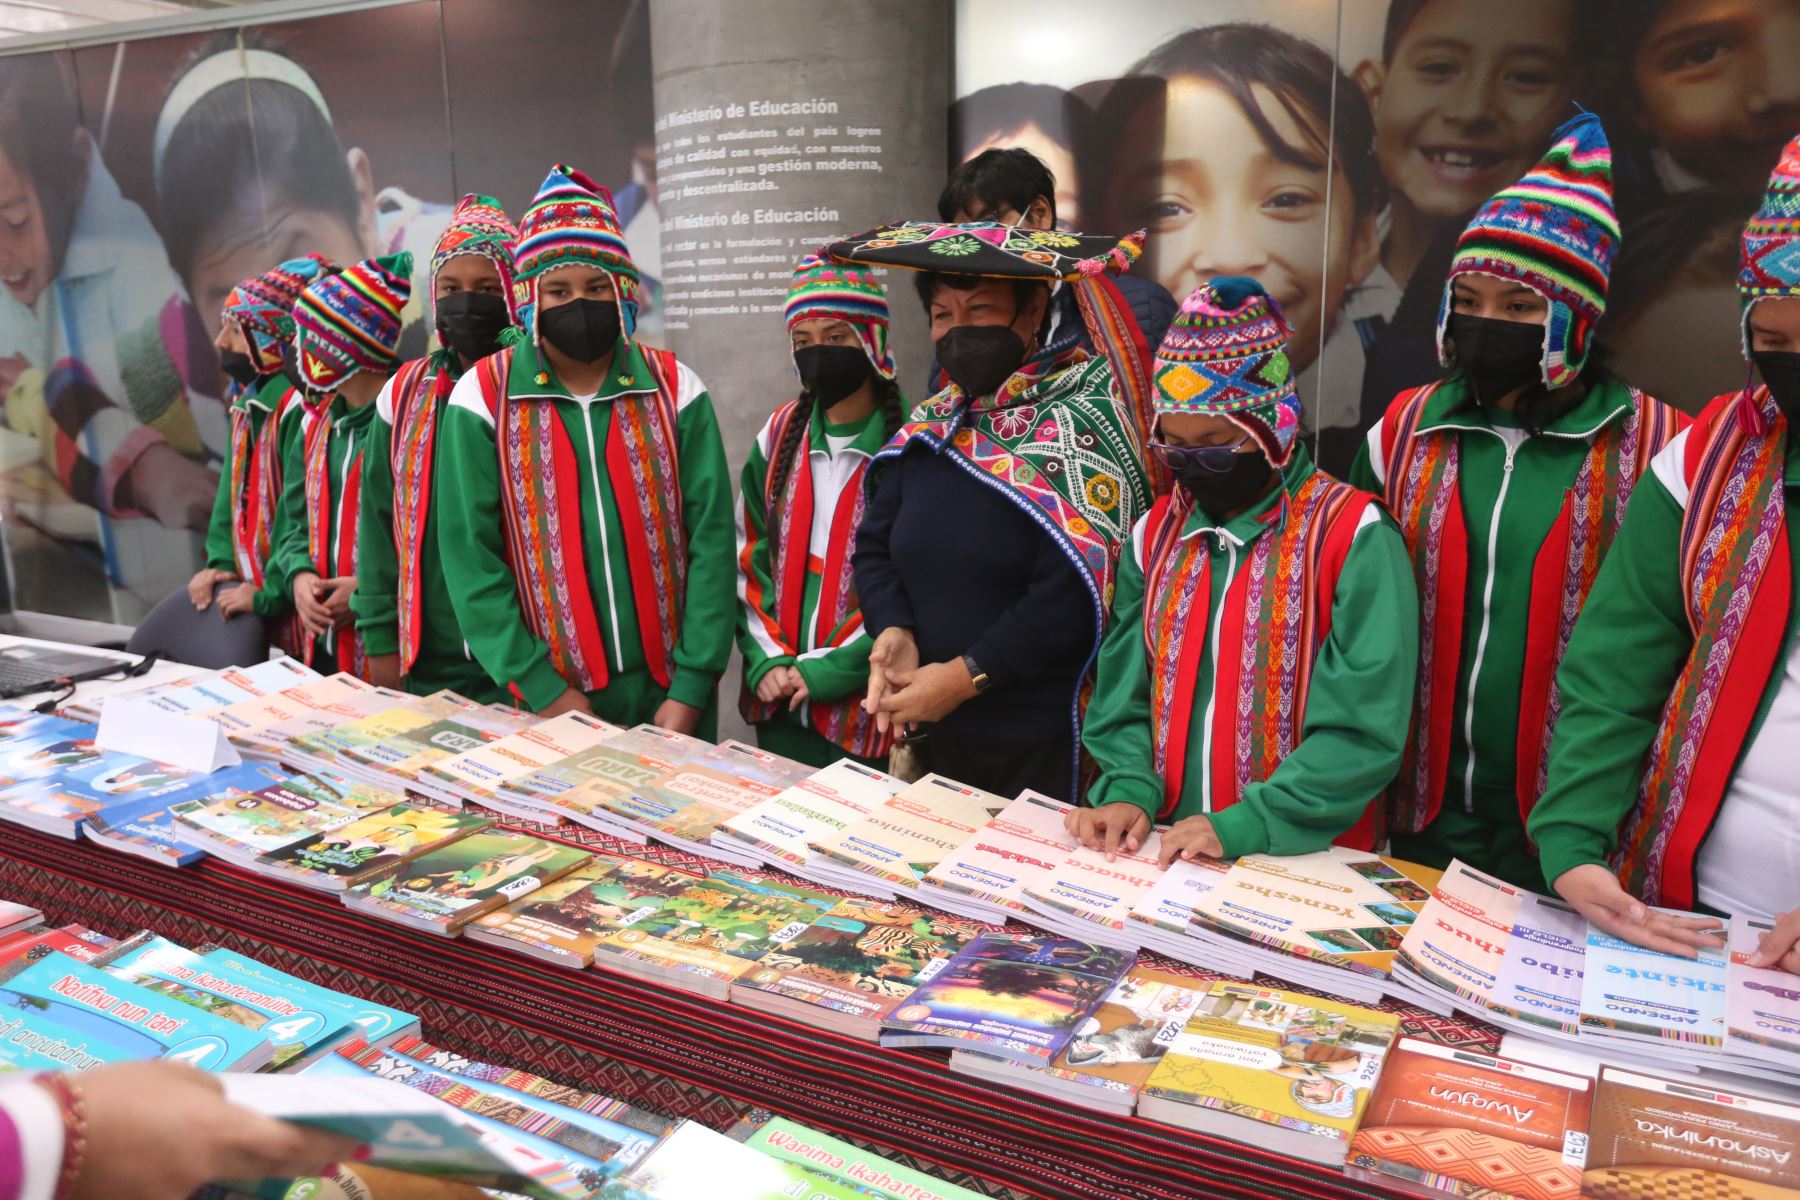 El Ministerio de Educación, exhibe libros en lenguas originarias que serán distribuidos en las Instituciones educativas a nivel nacional. Foto: ANDINA/ Eddy Ramos